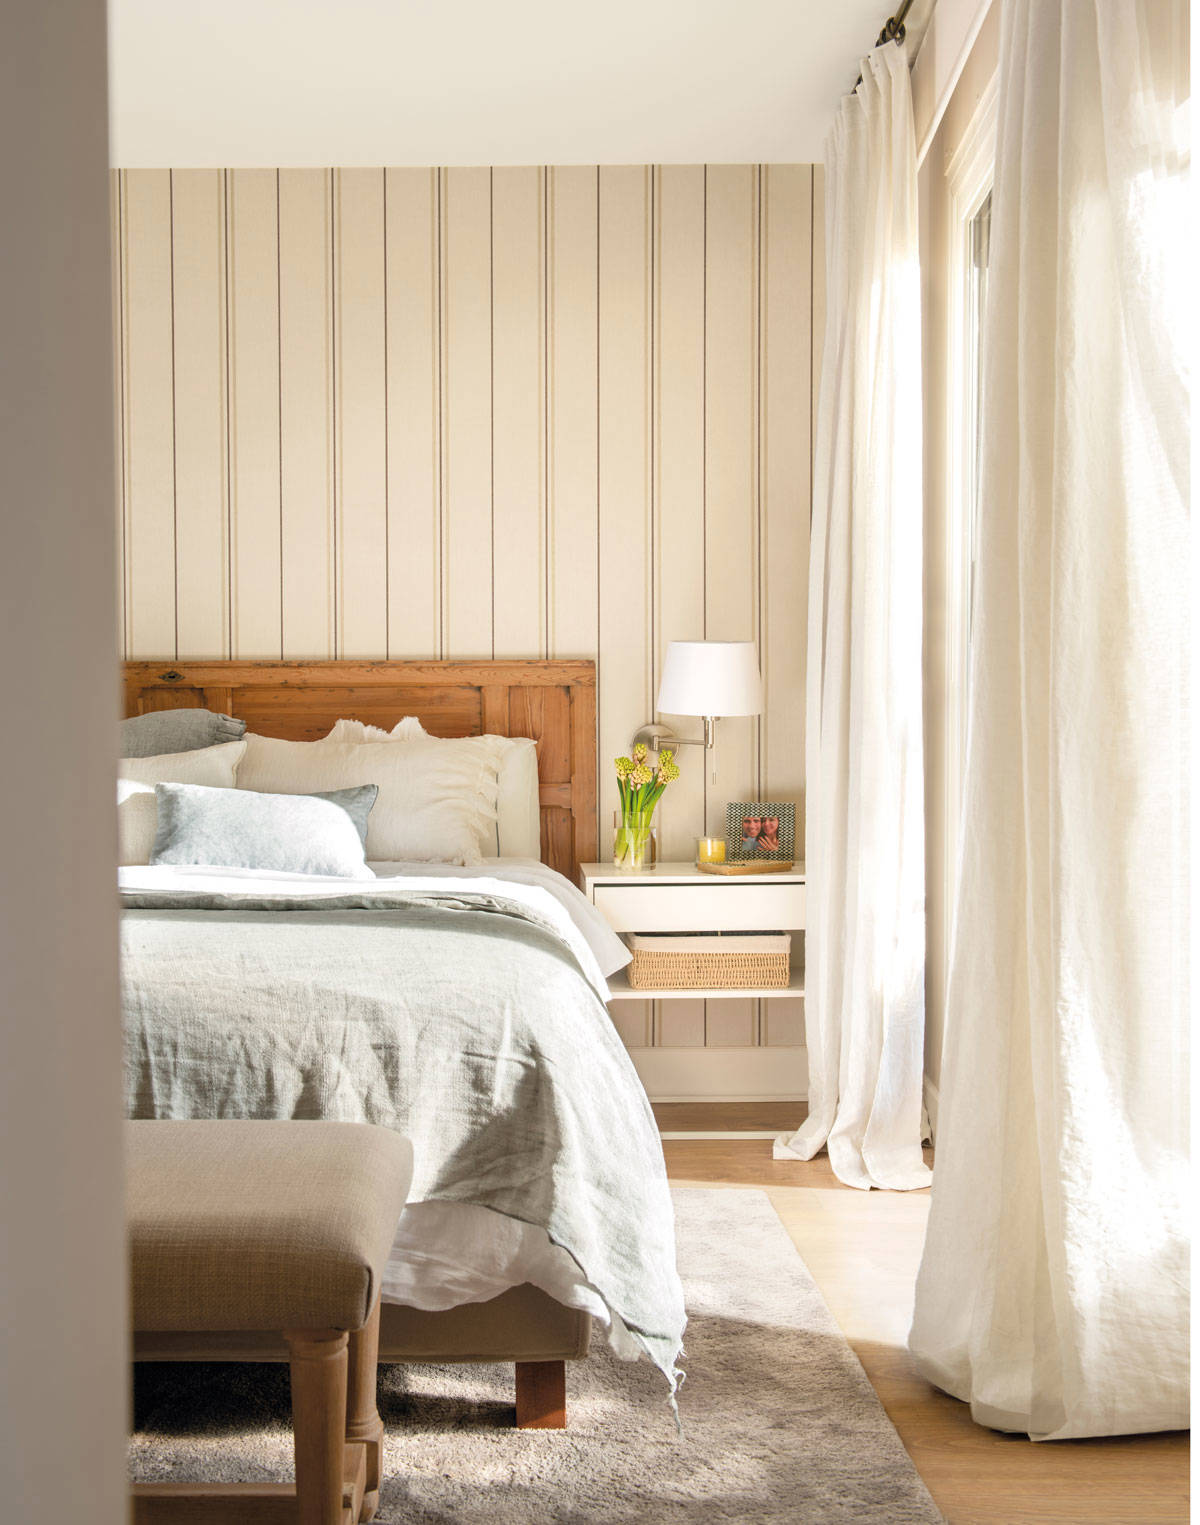 Dormitorio con papel pintado a rayas en la pared del cabecero 